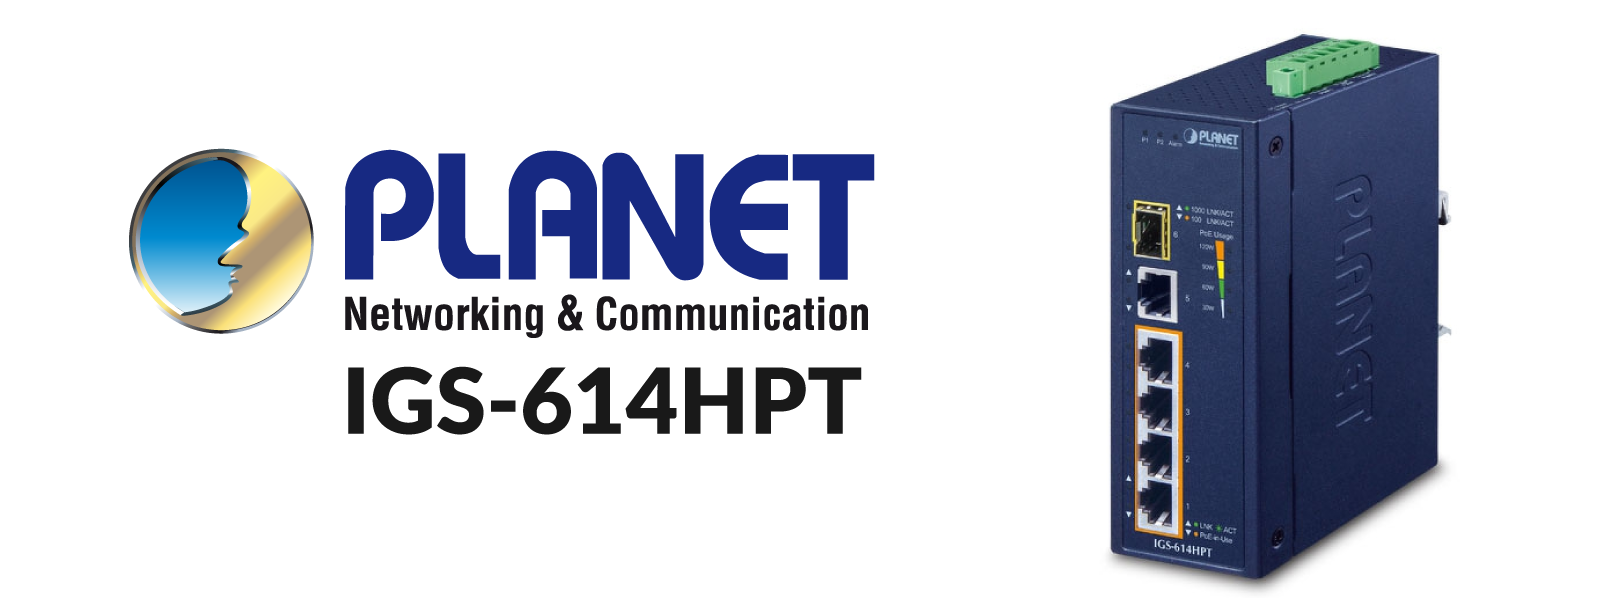 Planet IGS-614HPT – mały przełącznik do ciężkich zadań